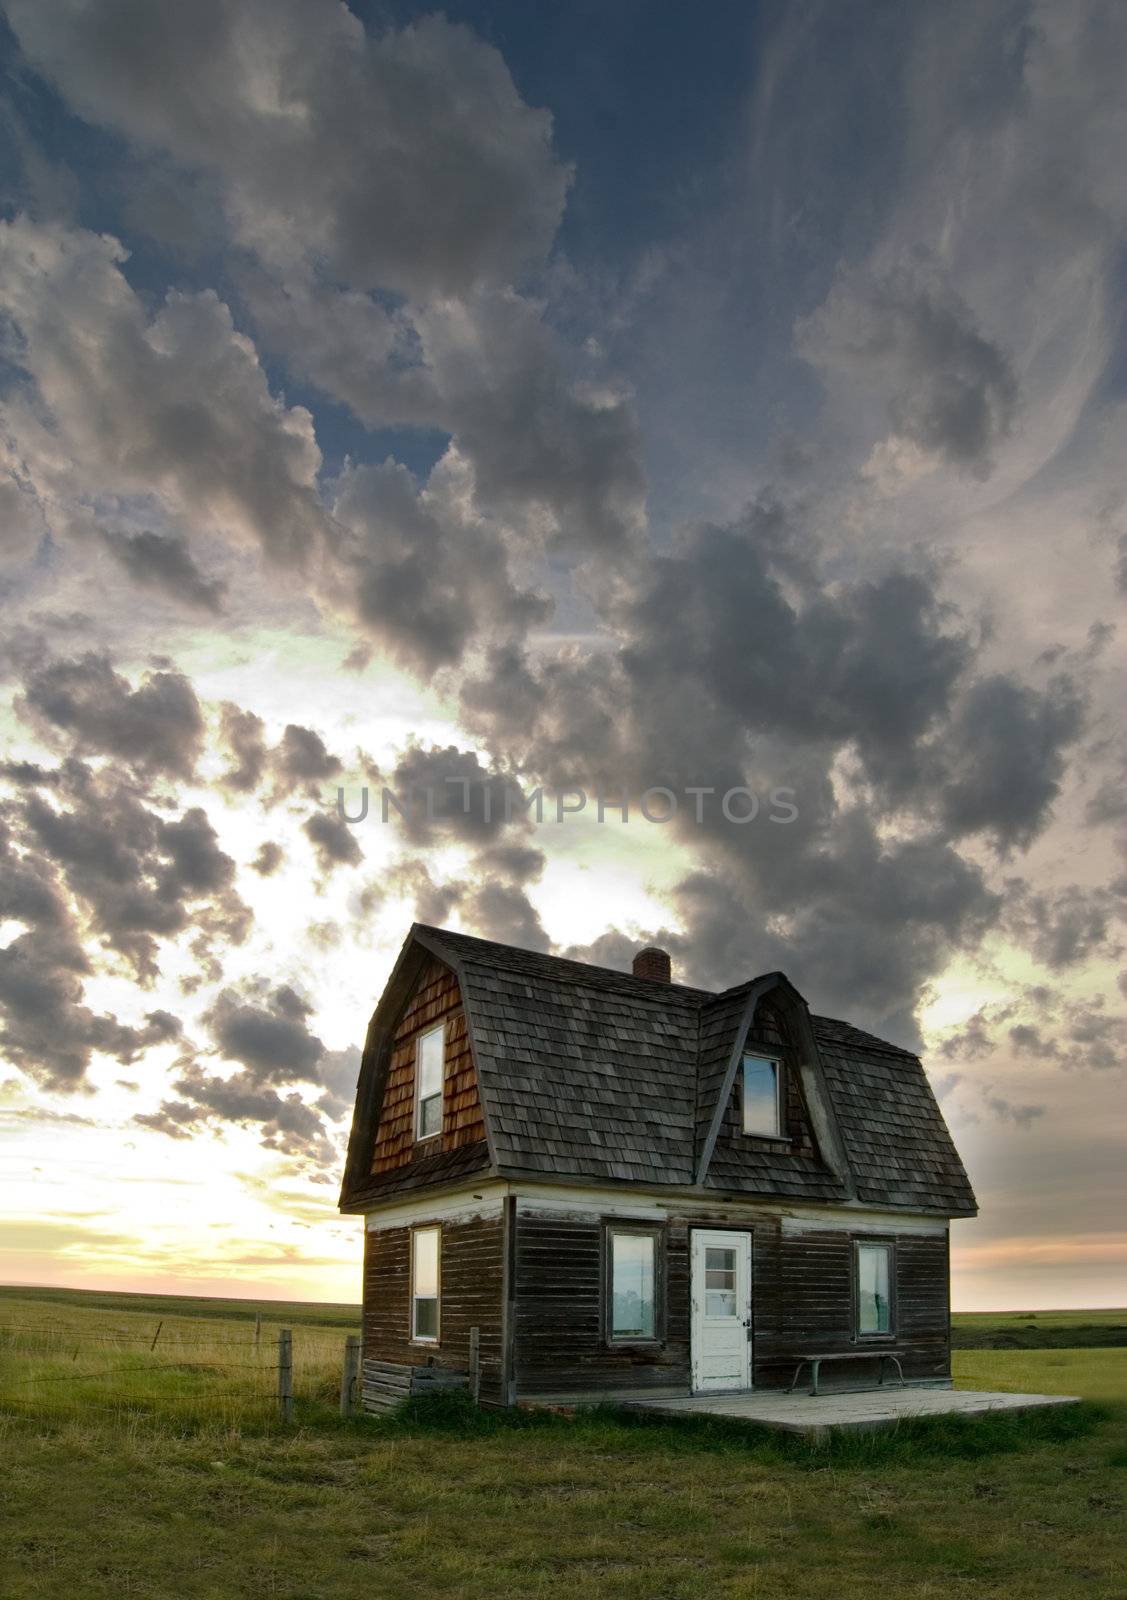 An old house on the prairie